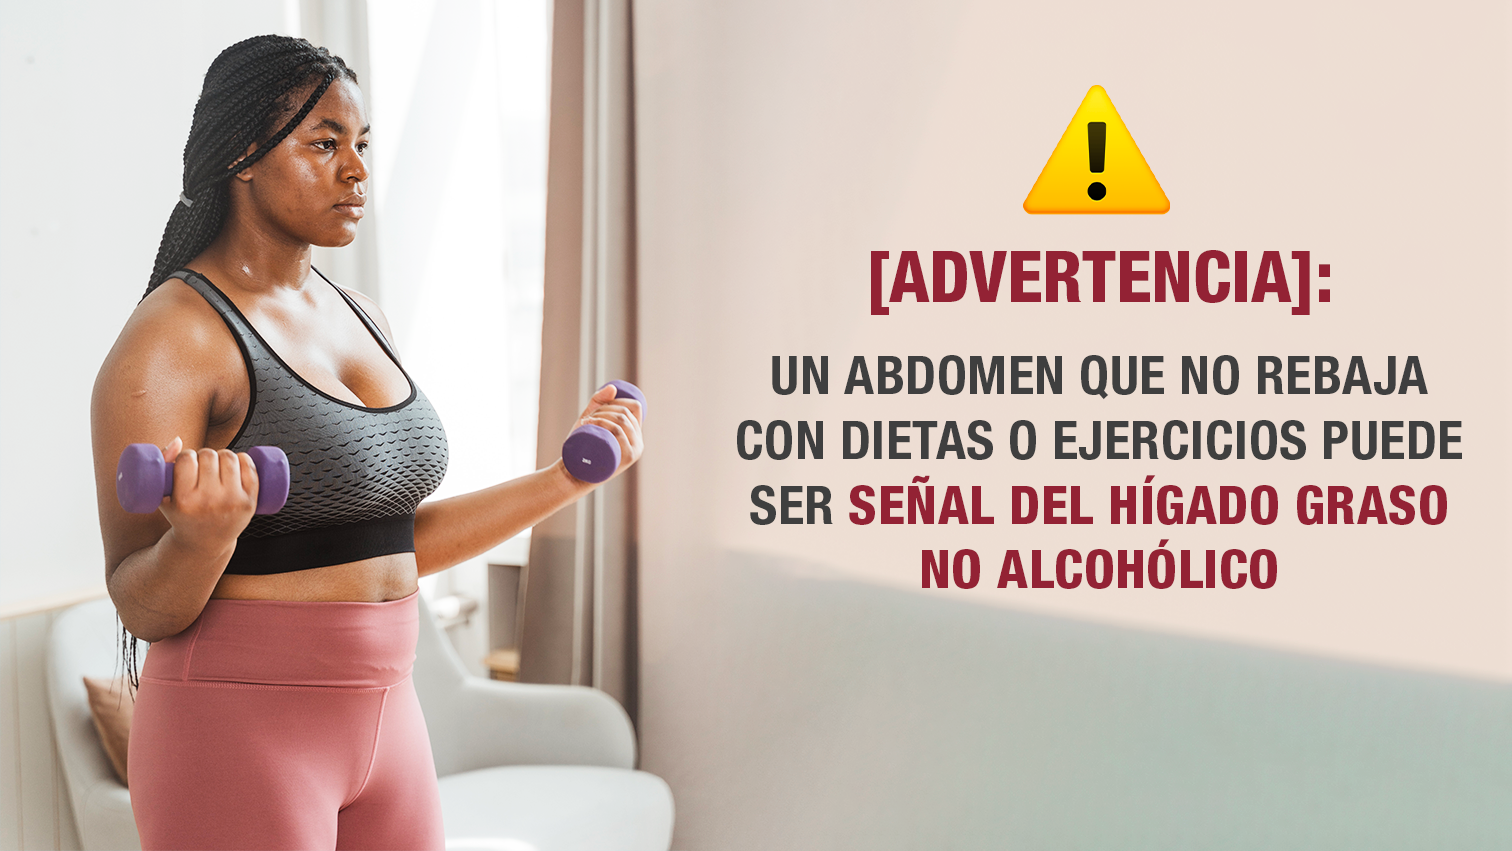 [Advertencia]: Un abdomen que no rebaja con dietas o ejercicios puede ser señal del hígado graso no alcohólico